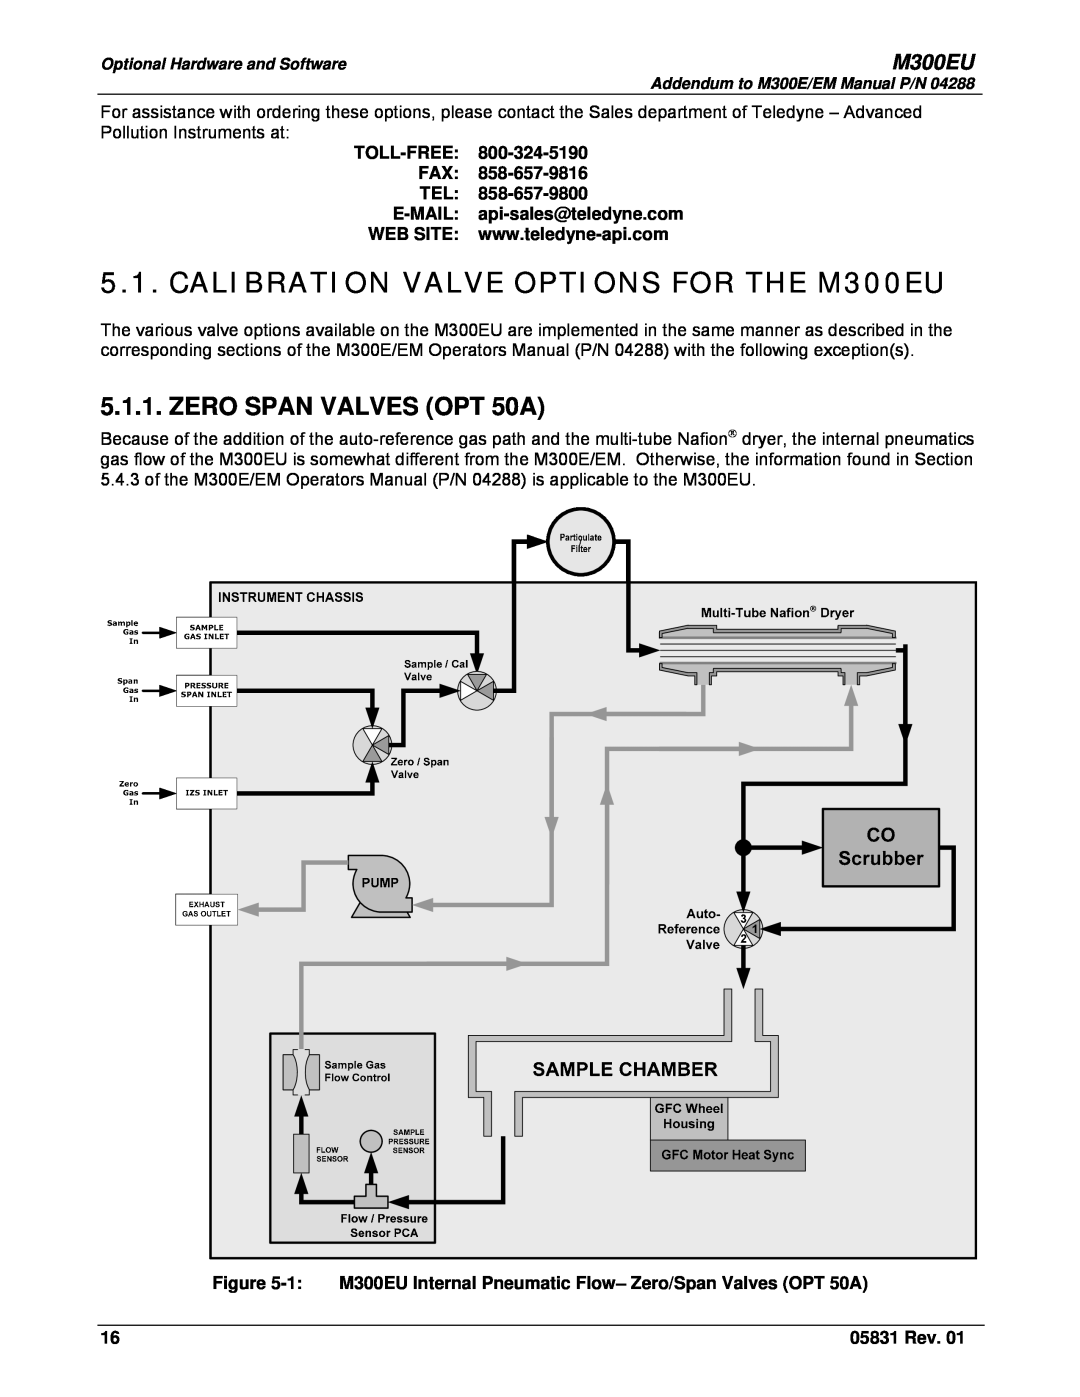 Teledyne Model 300EU manual CALIBRATION VALVE OPTIONS FOR THE M300EU, ZERO SPAN VALVES OPT 50A, 05831 Rev 